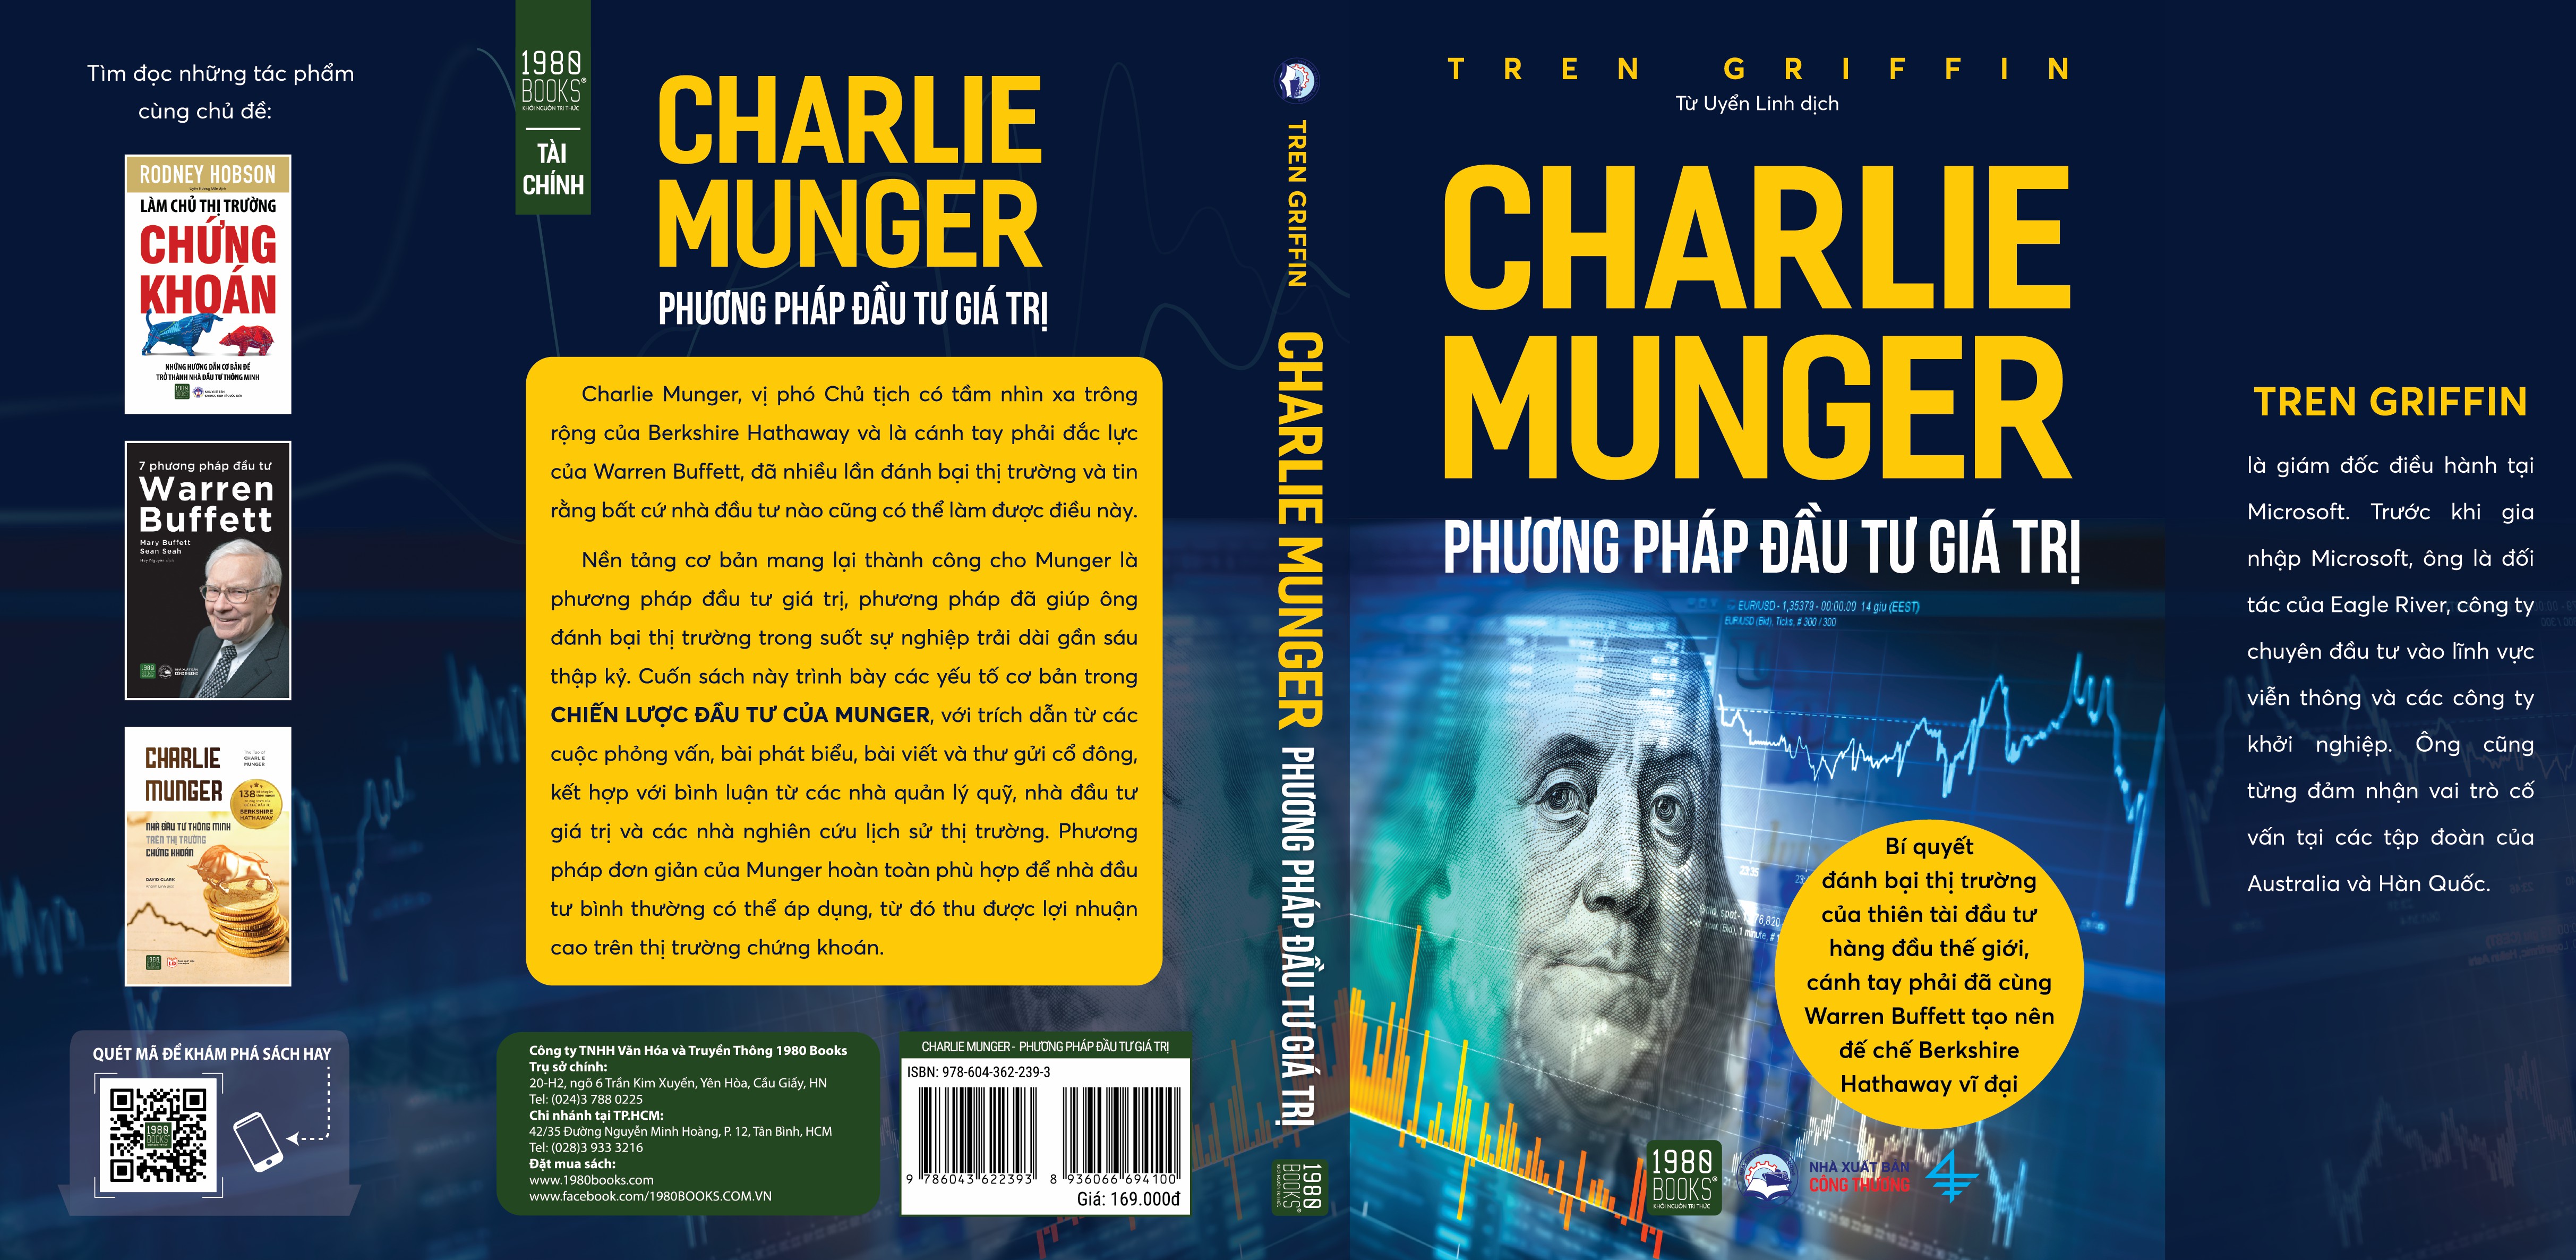 Charlie Munger - Phương pháp đầu tư giá trị - Tren Griffin - 1980 BOOKS HCM